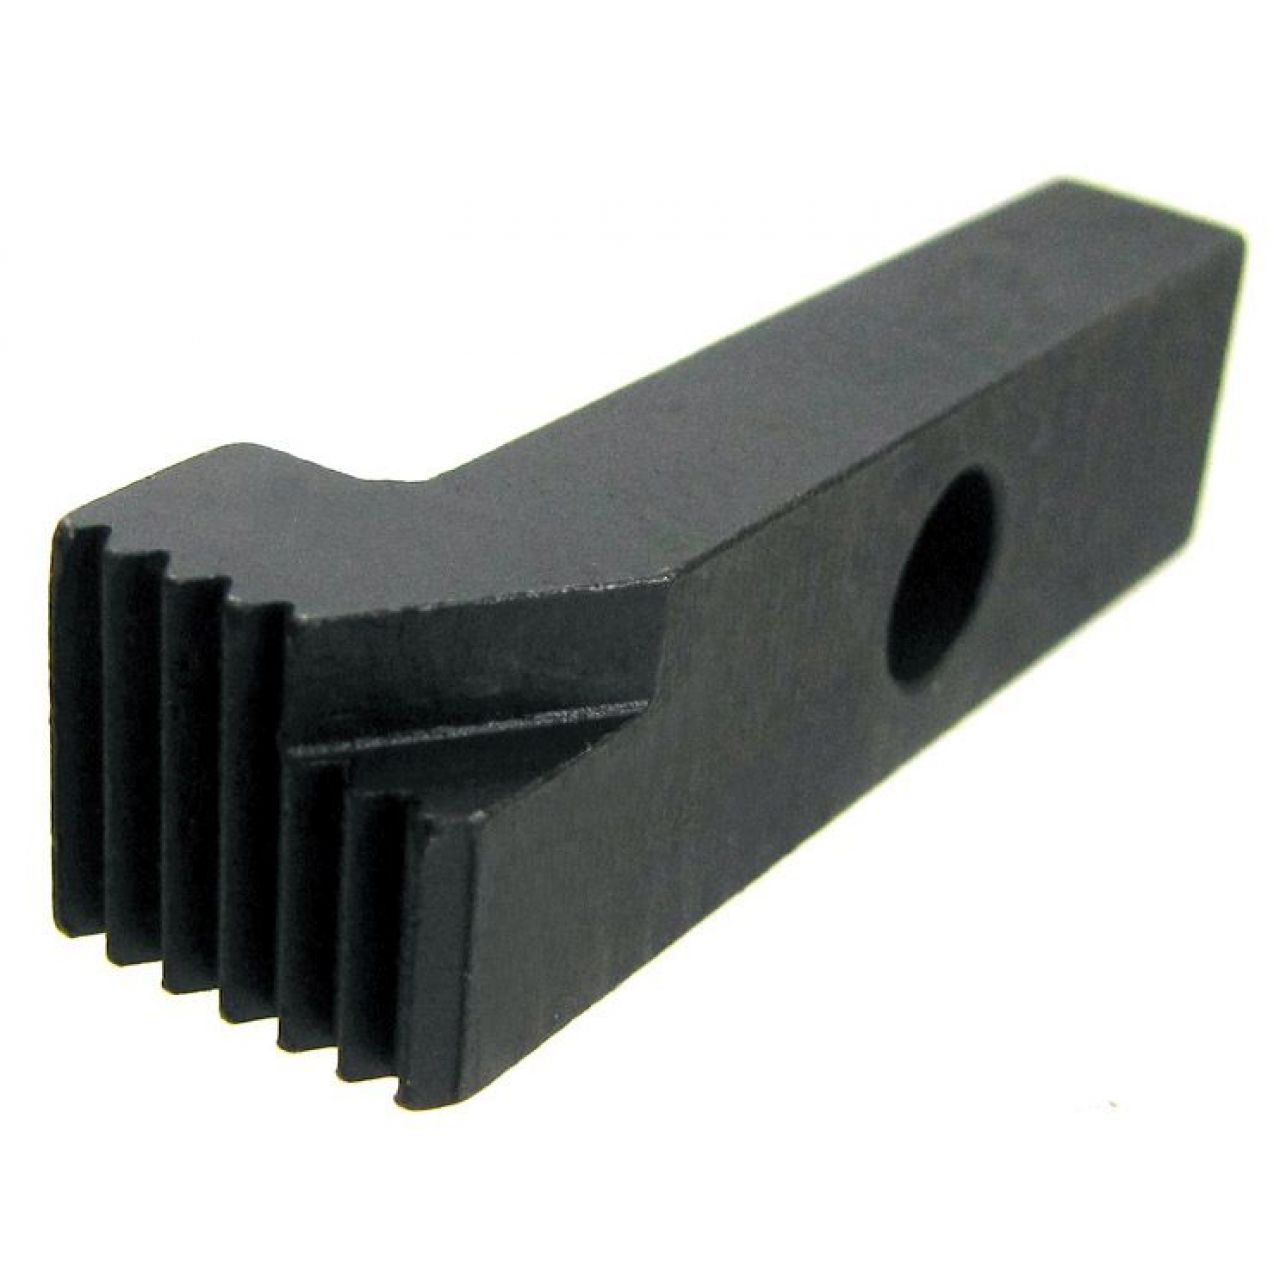 Cuchilla de varios dientes para el mecanizado con accesorio Keyway-skip, paso 1,75 mm